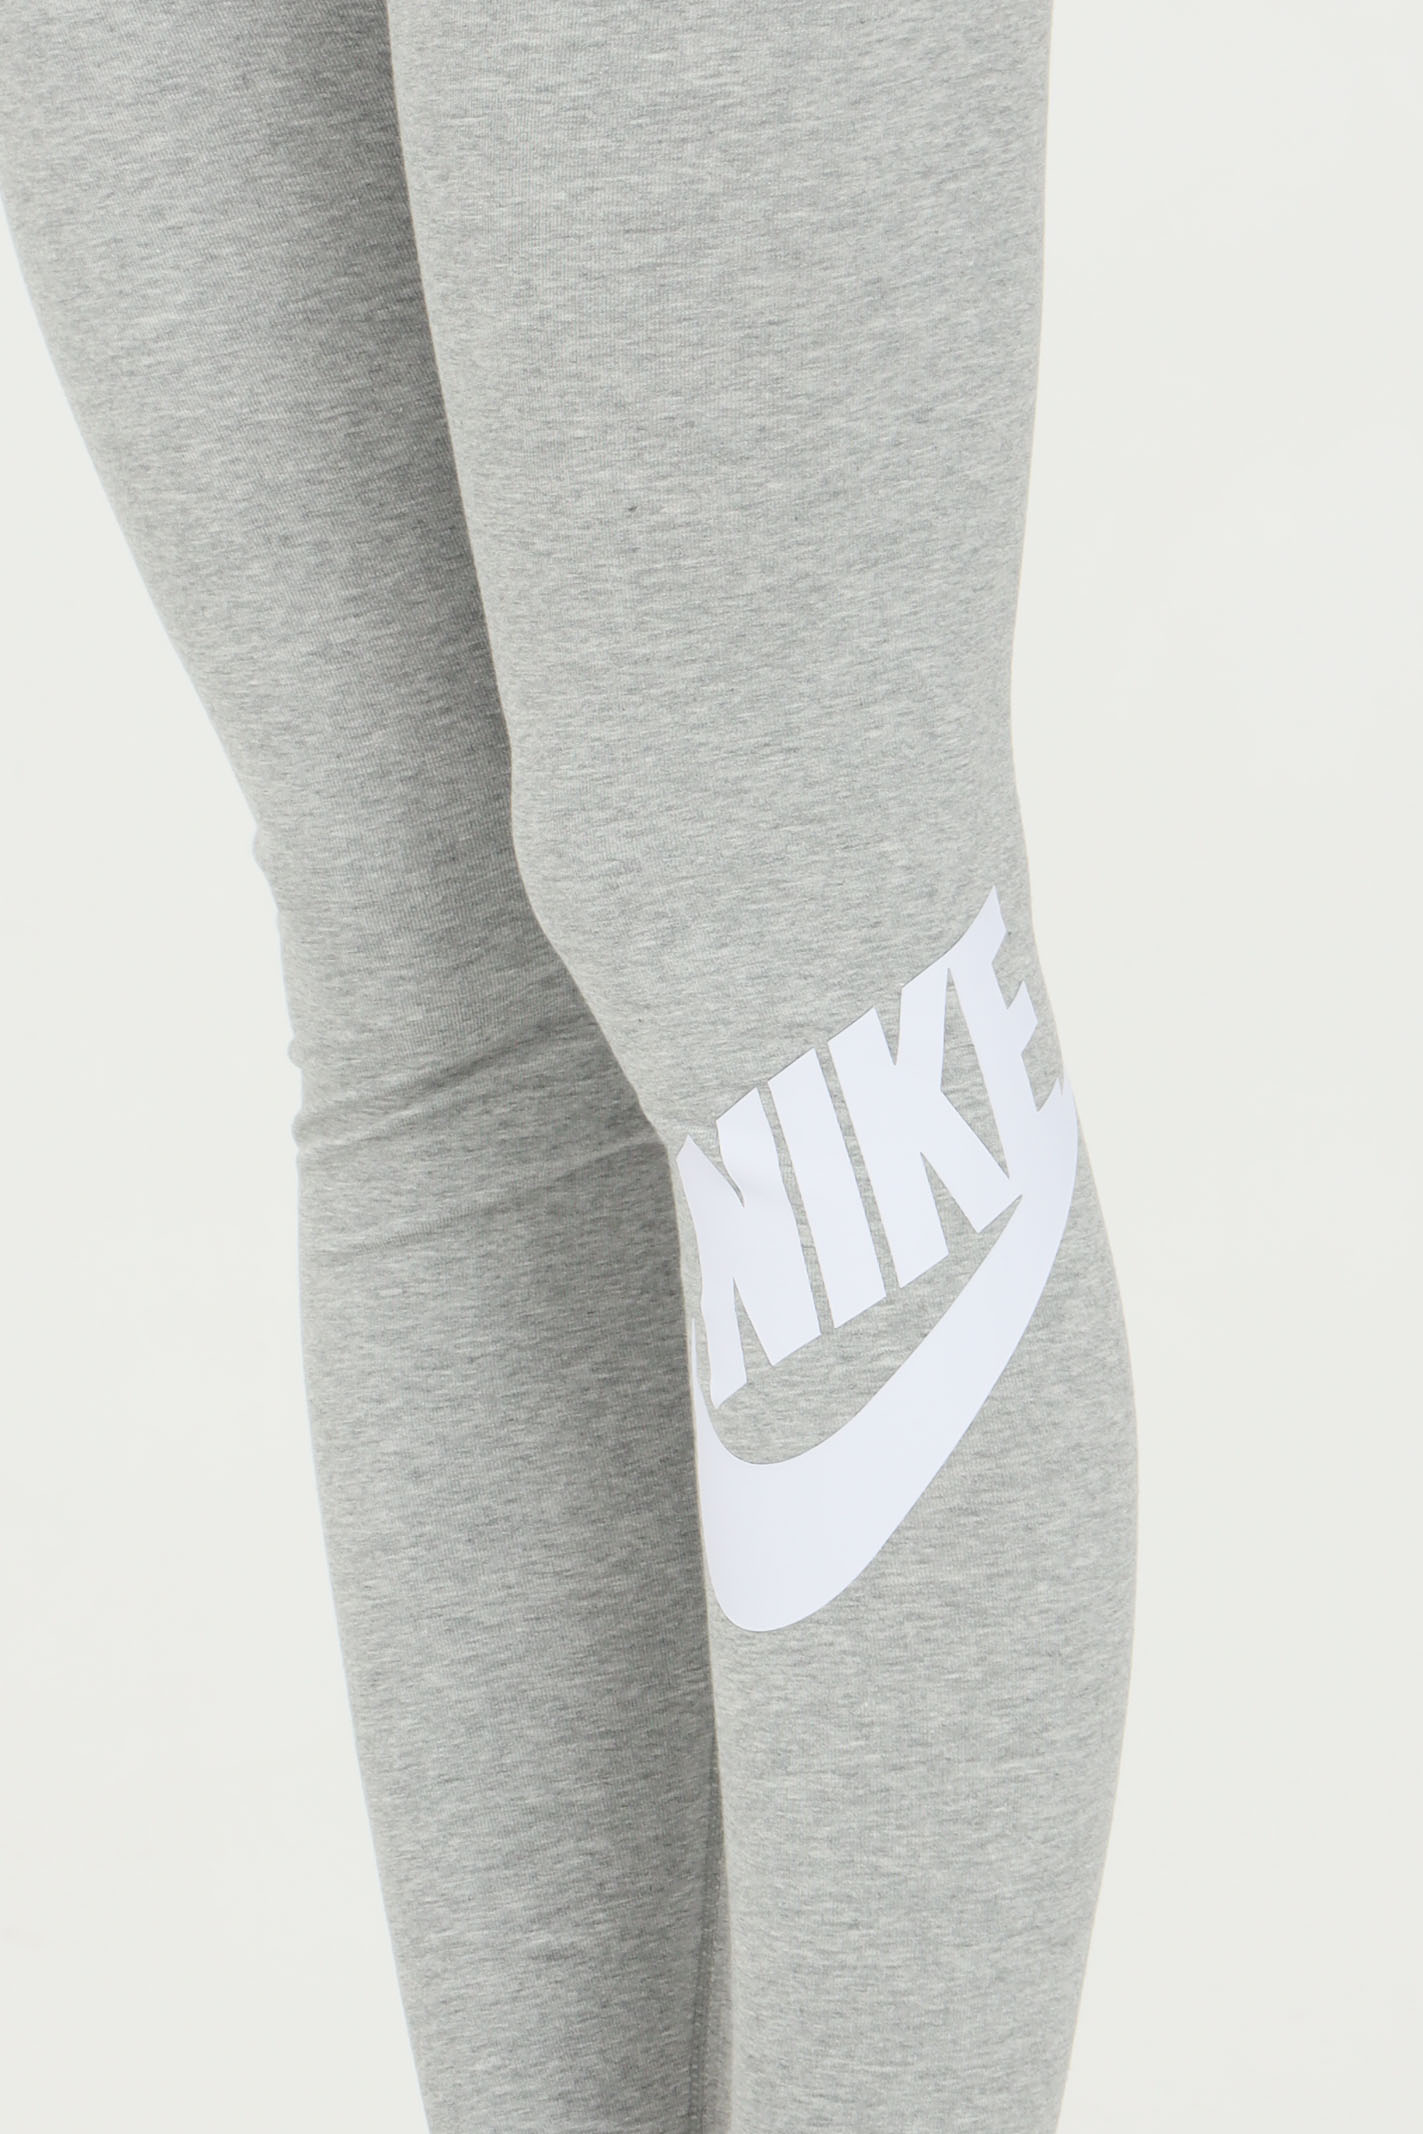  Grey Nike Leggings